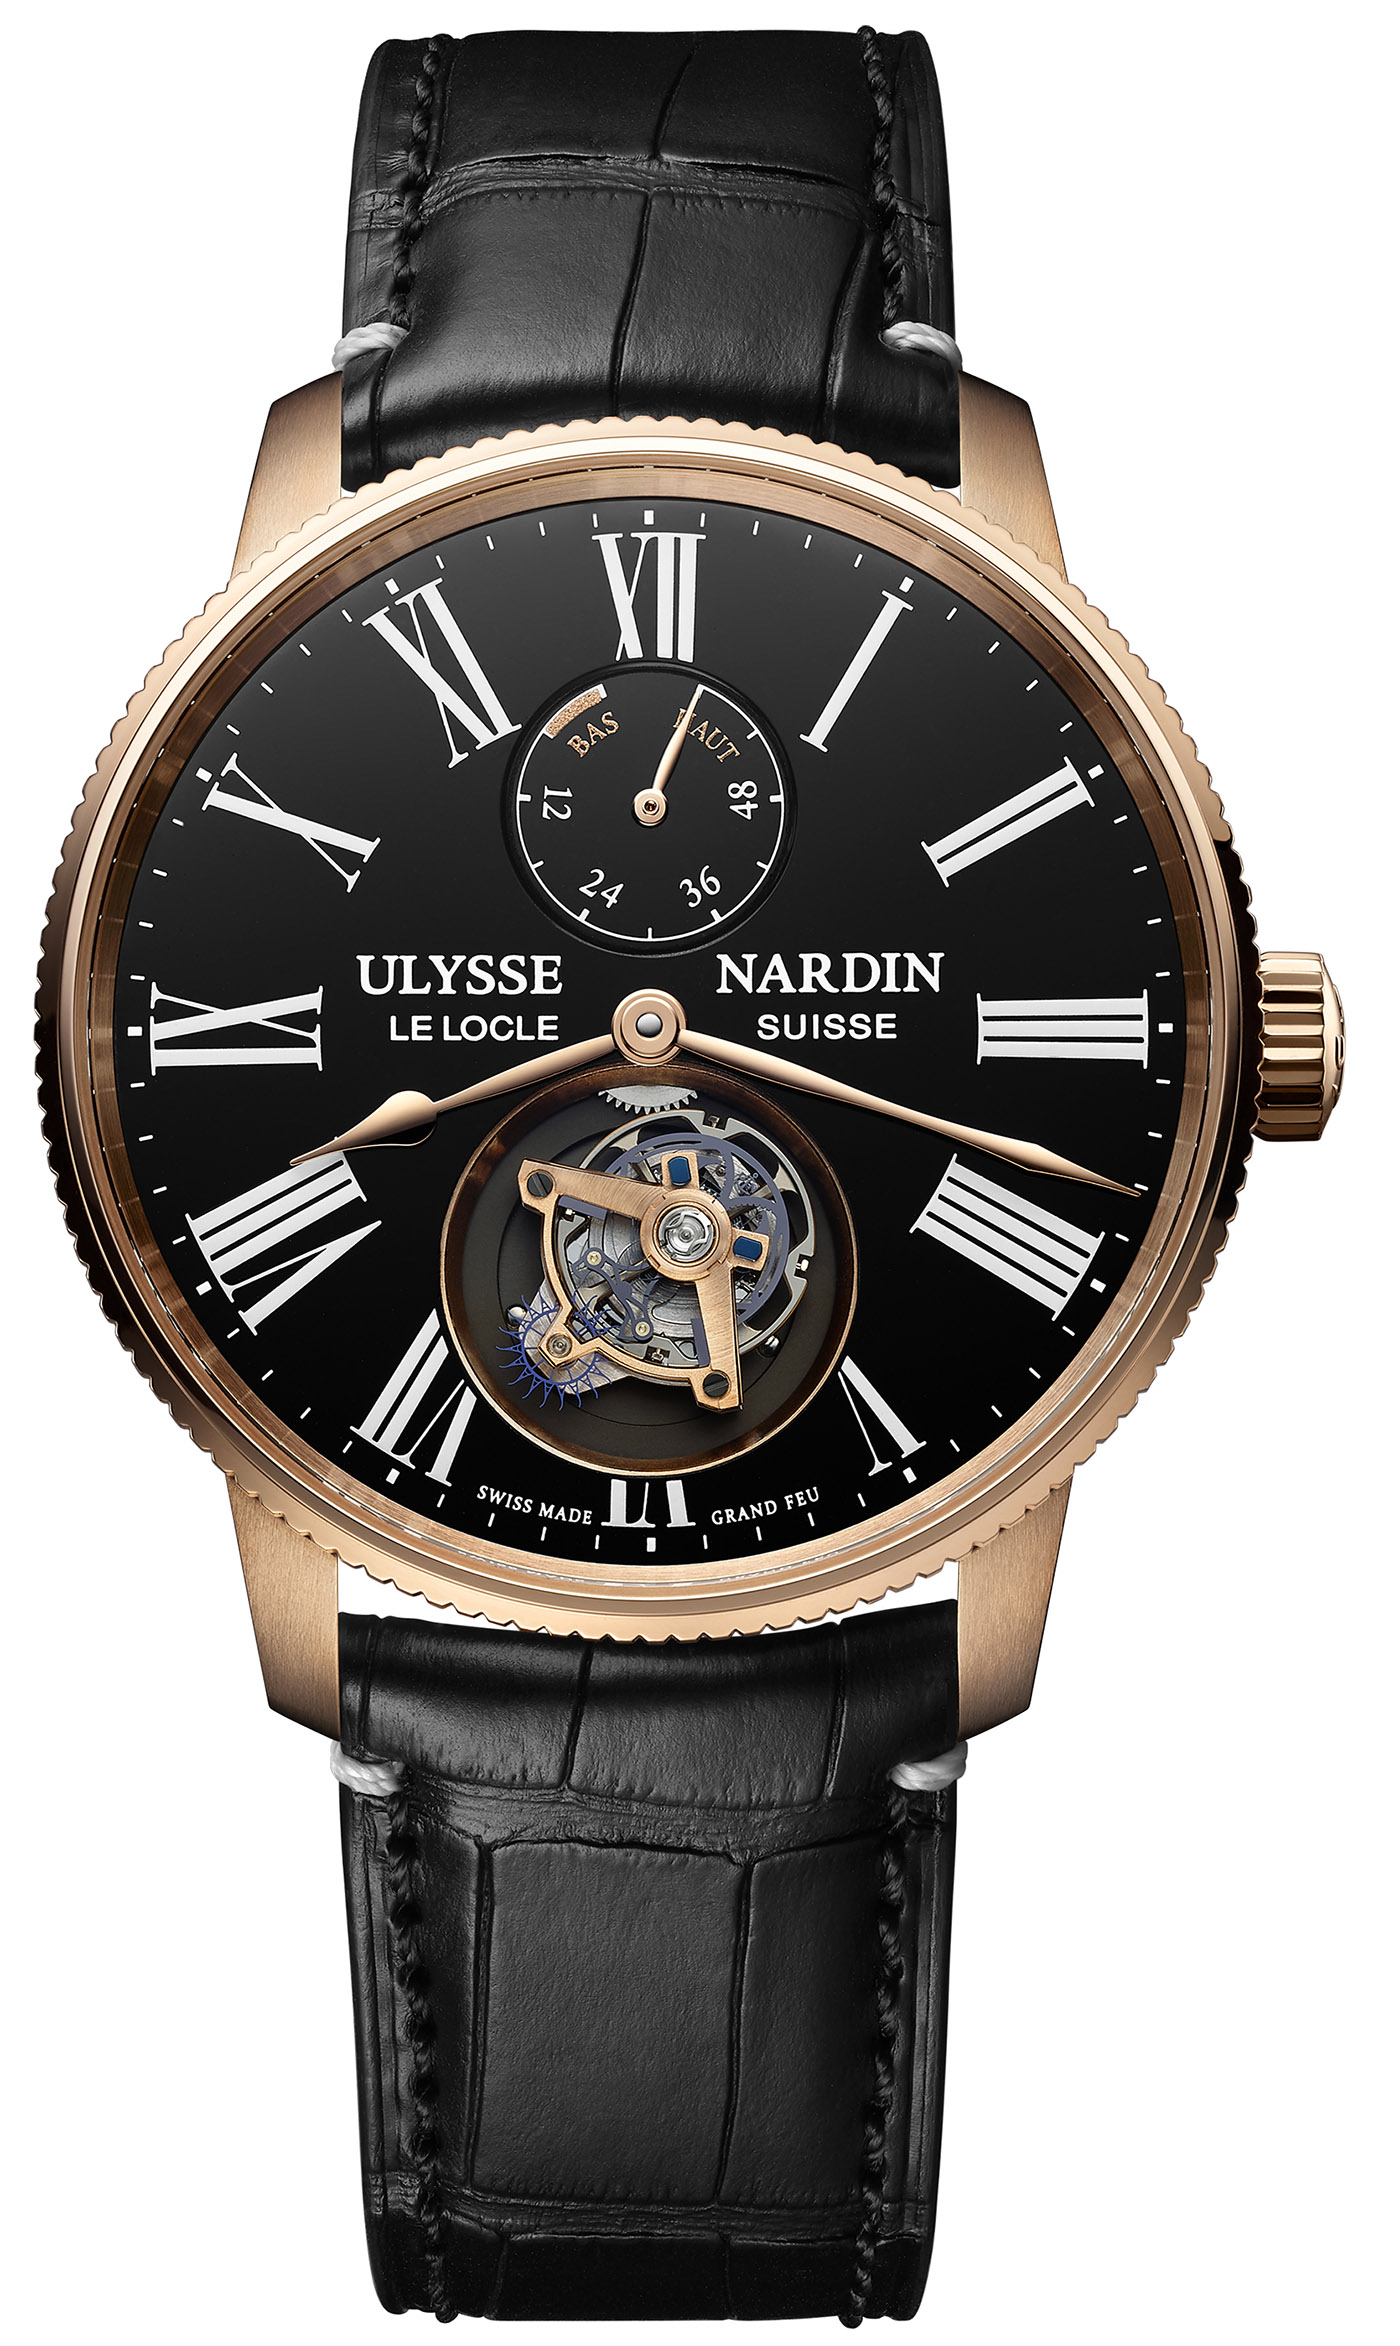 Ulysse Nardin празднует 175-летие ограниченной серией часов Marine Torpilleur Tourbillon Grand Feu